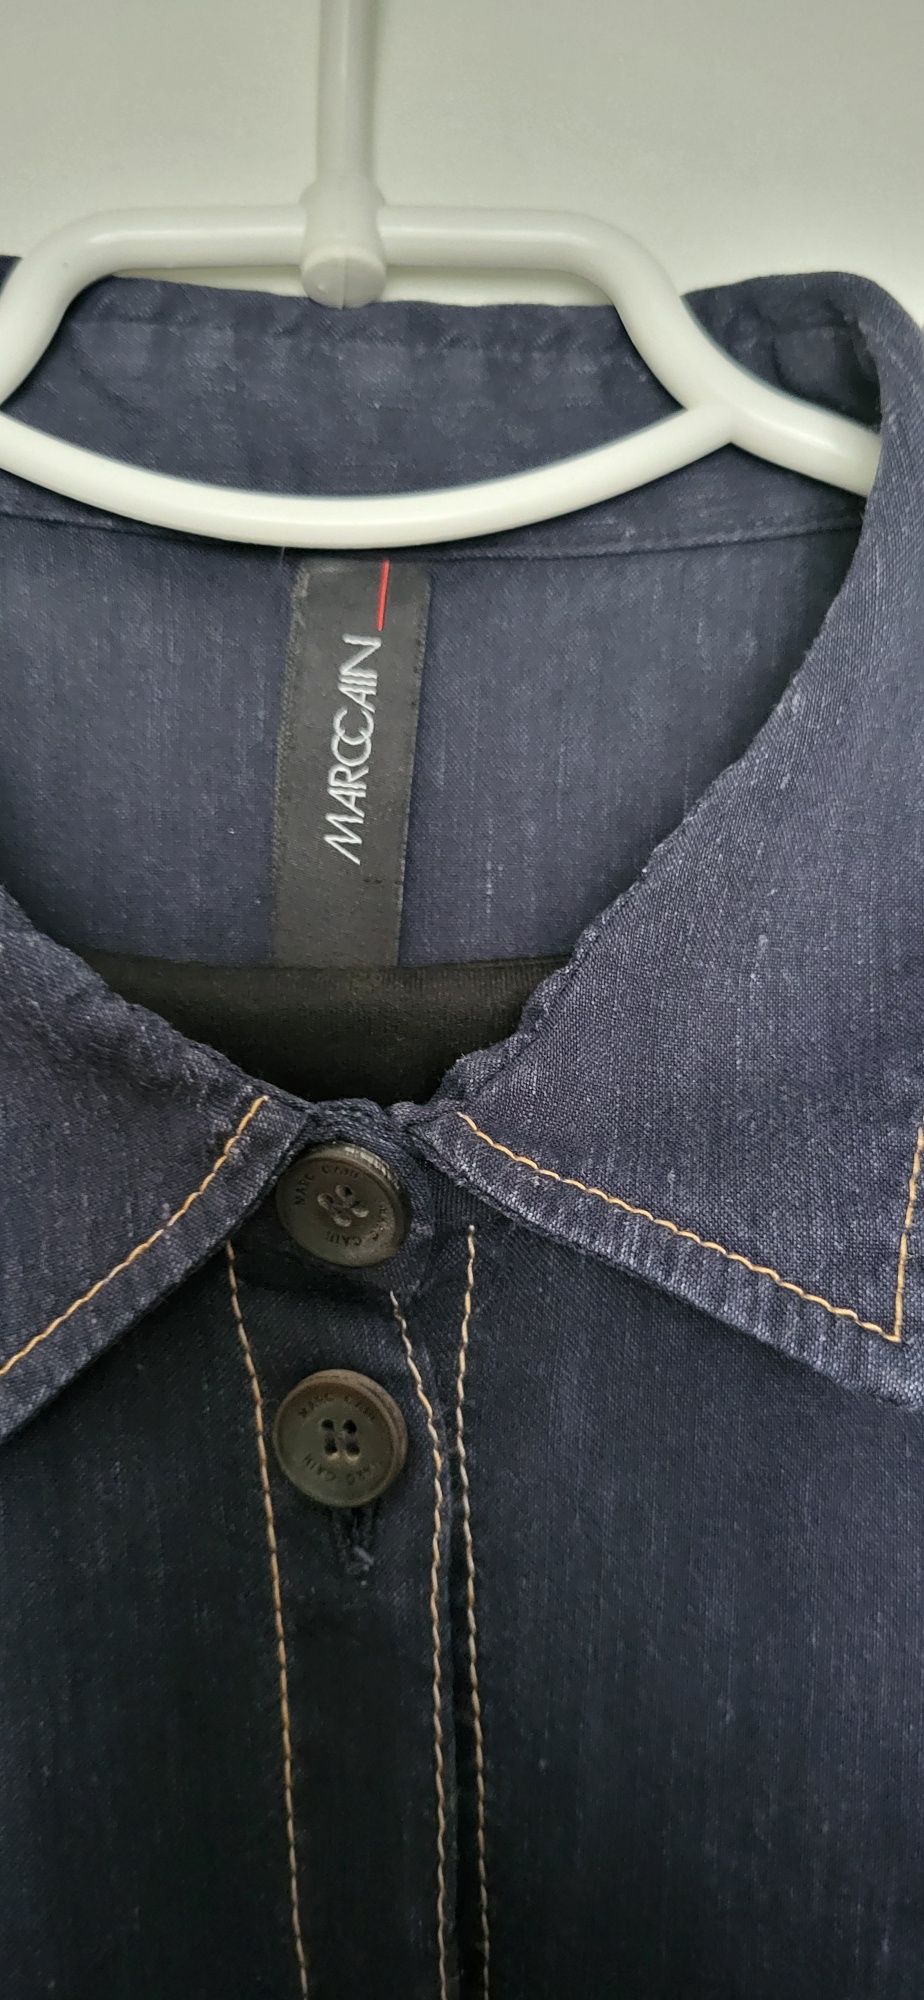 Платье рубашка джинсовое стильное бренд Marccain лен джинс